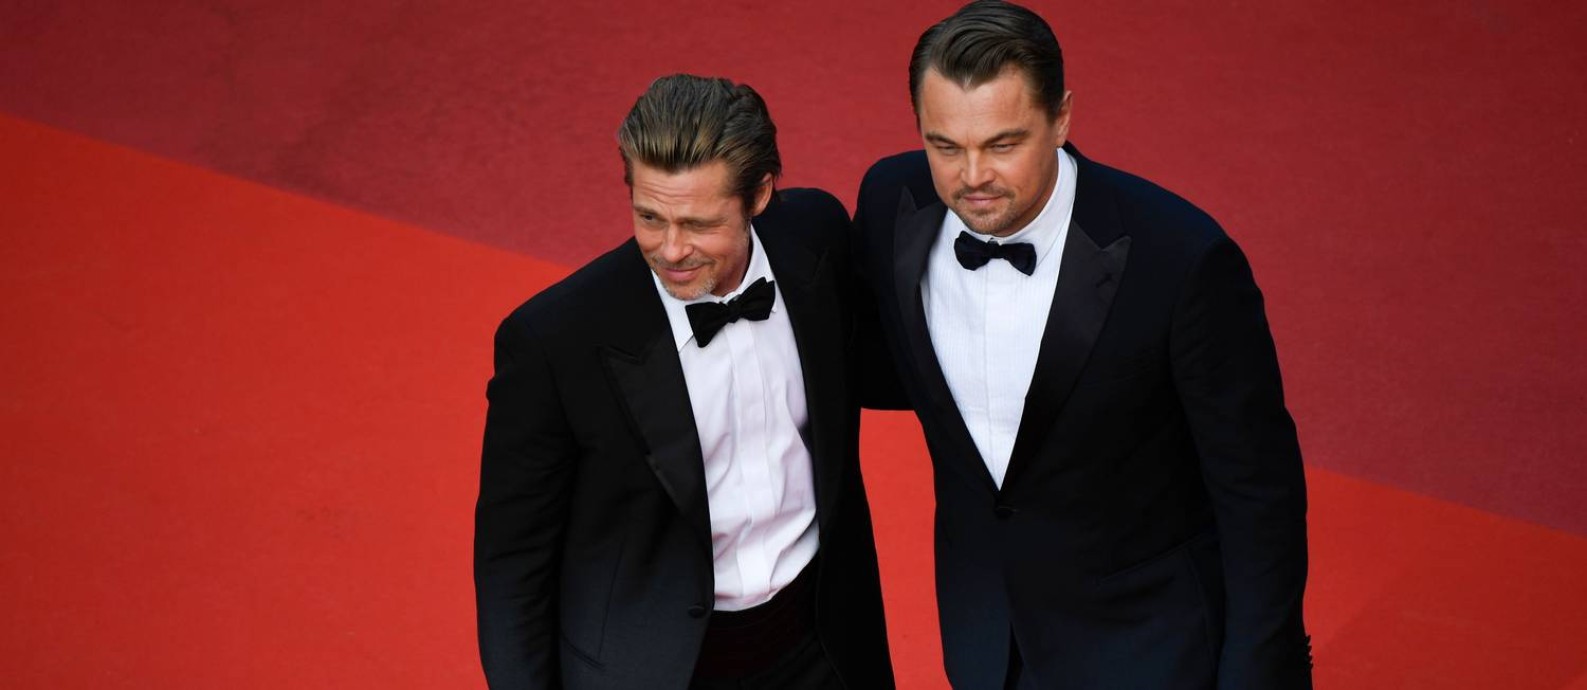 Brad Pitt e Leonardo DiCaprio no tapete vermelho de Cannes, onde "Era uma vez em Hollywood" concorre à Palma de Ouro Foto: CHRISTOPHE SIMON / AFP